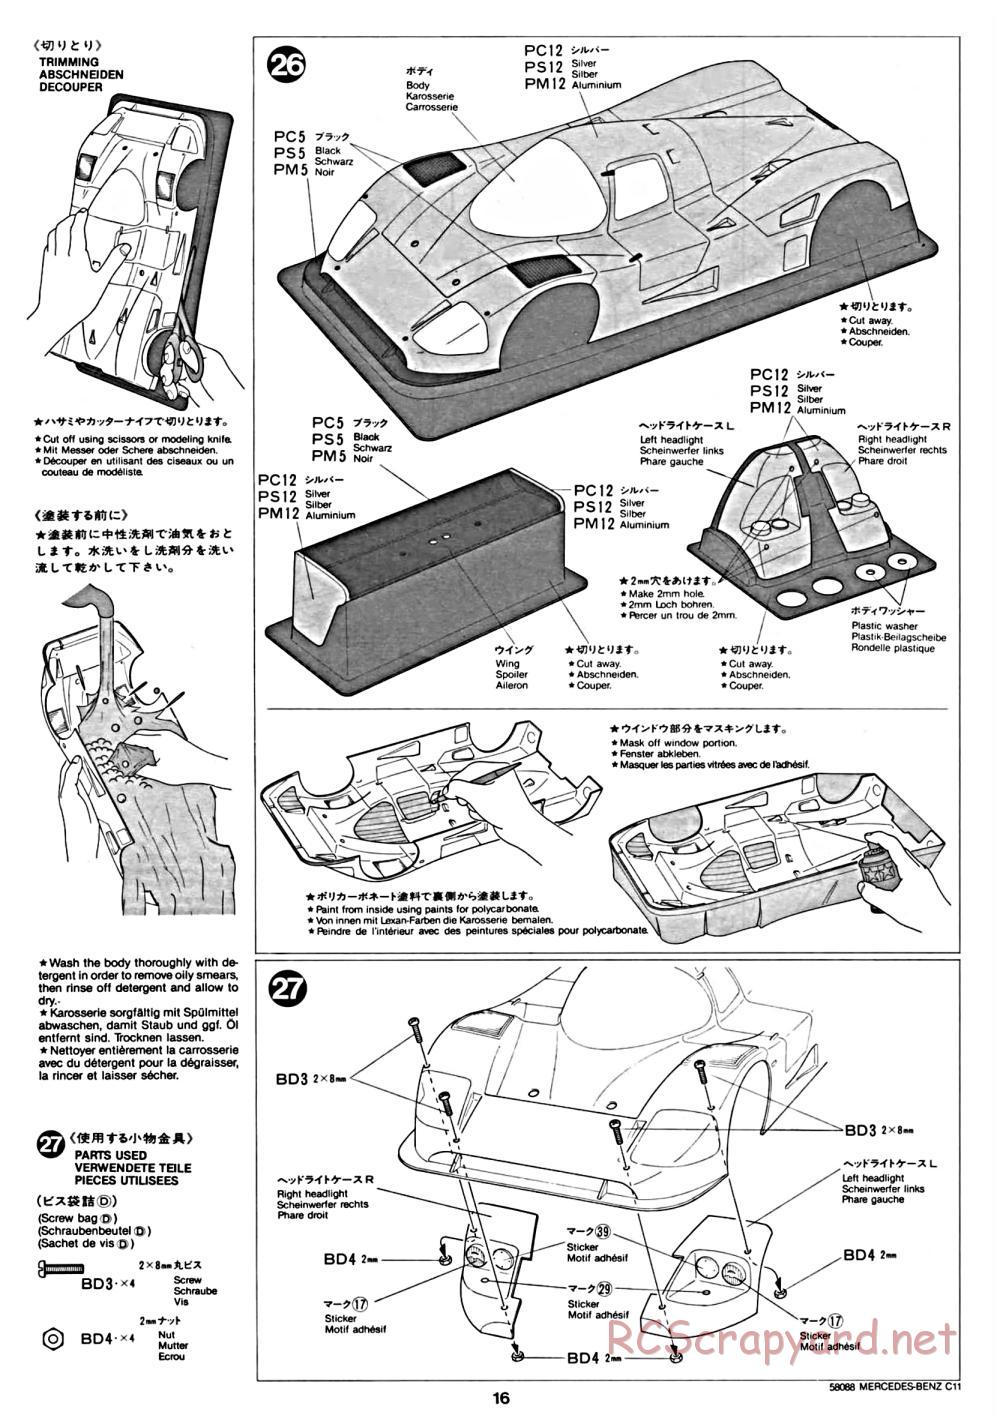 Tamiya - Mercedes Benz C11 - 58088 - Manual - Page 16